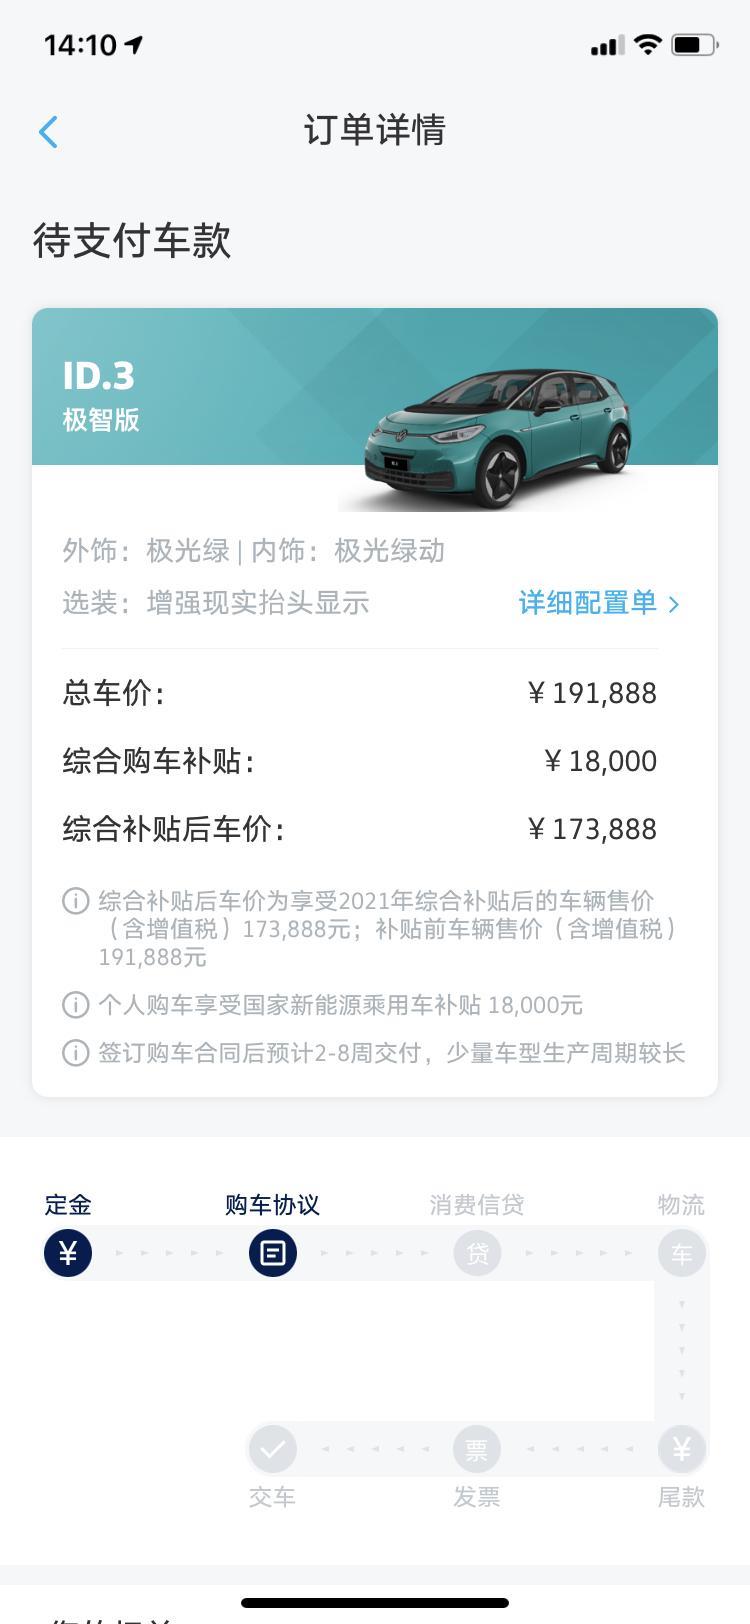 大众id.3今天去4S试驾了一下，看了一下实车的样子还是决定下订了。不知道是不是是因为在上海，去4S店看车人都围在ID3旁边，让我感觉这个车有可能还卖的挺不错的